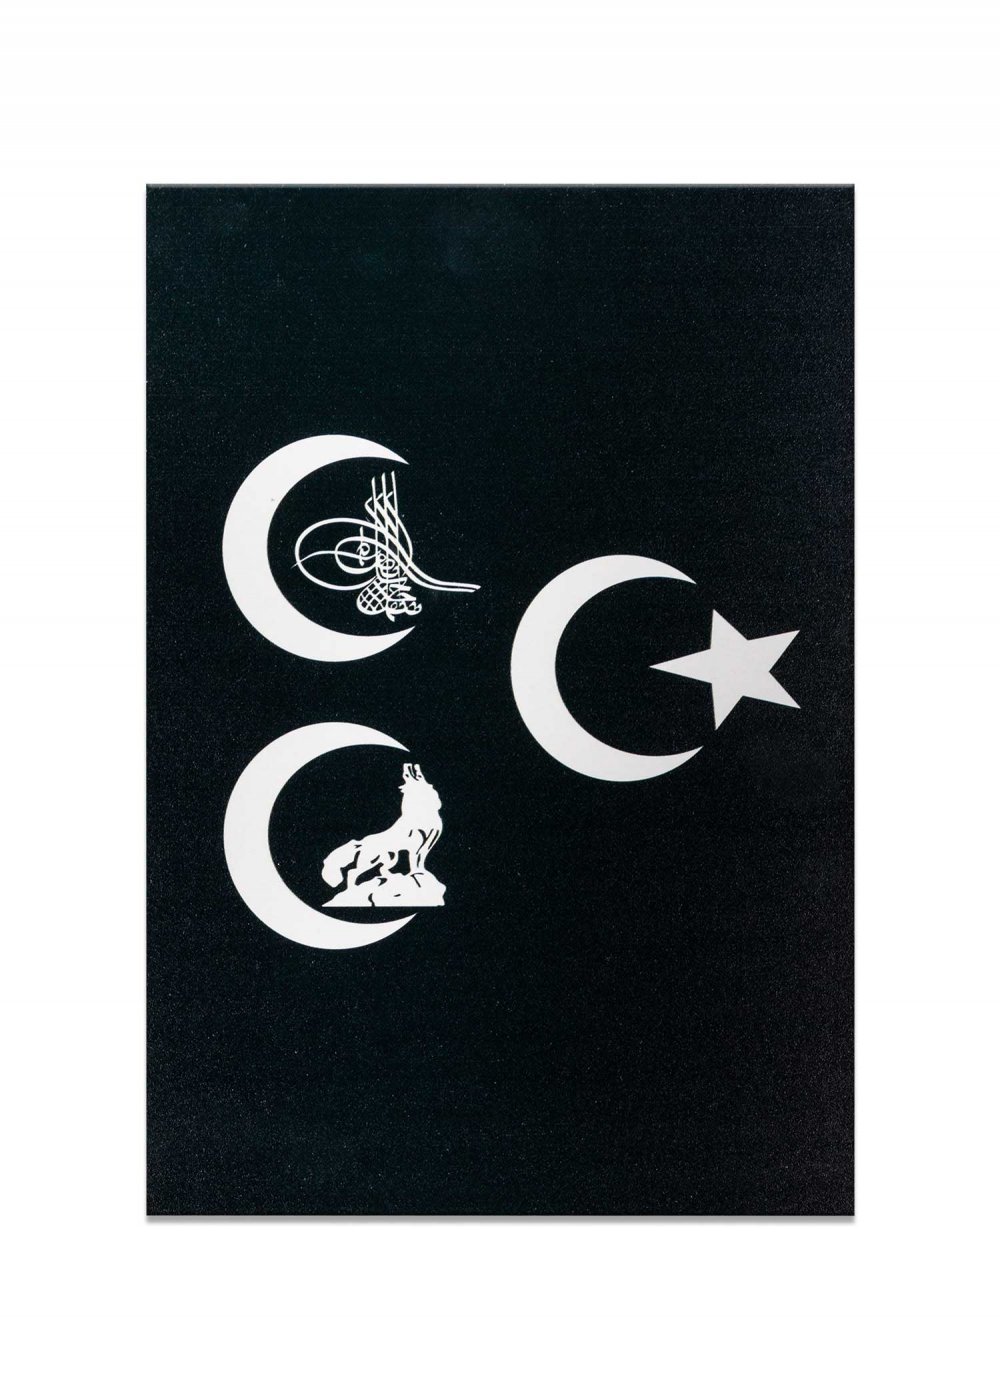 Türk Asker Patch Göktürk Arma Bozkurt Türkei Flagge Osmanli Bayrak Üc Hilal Logo 